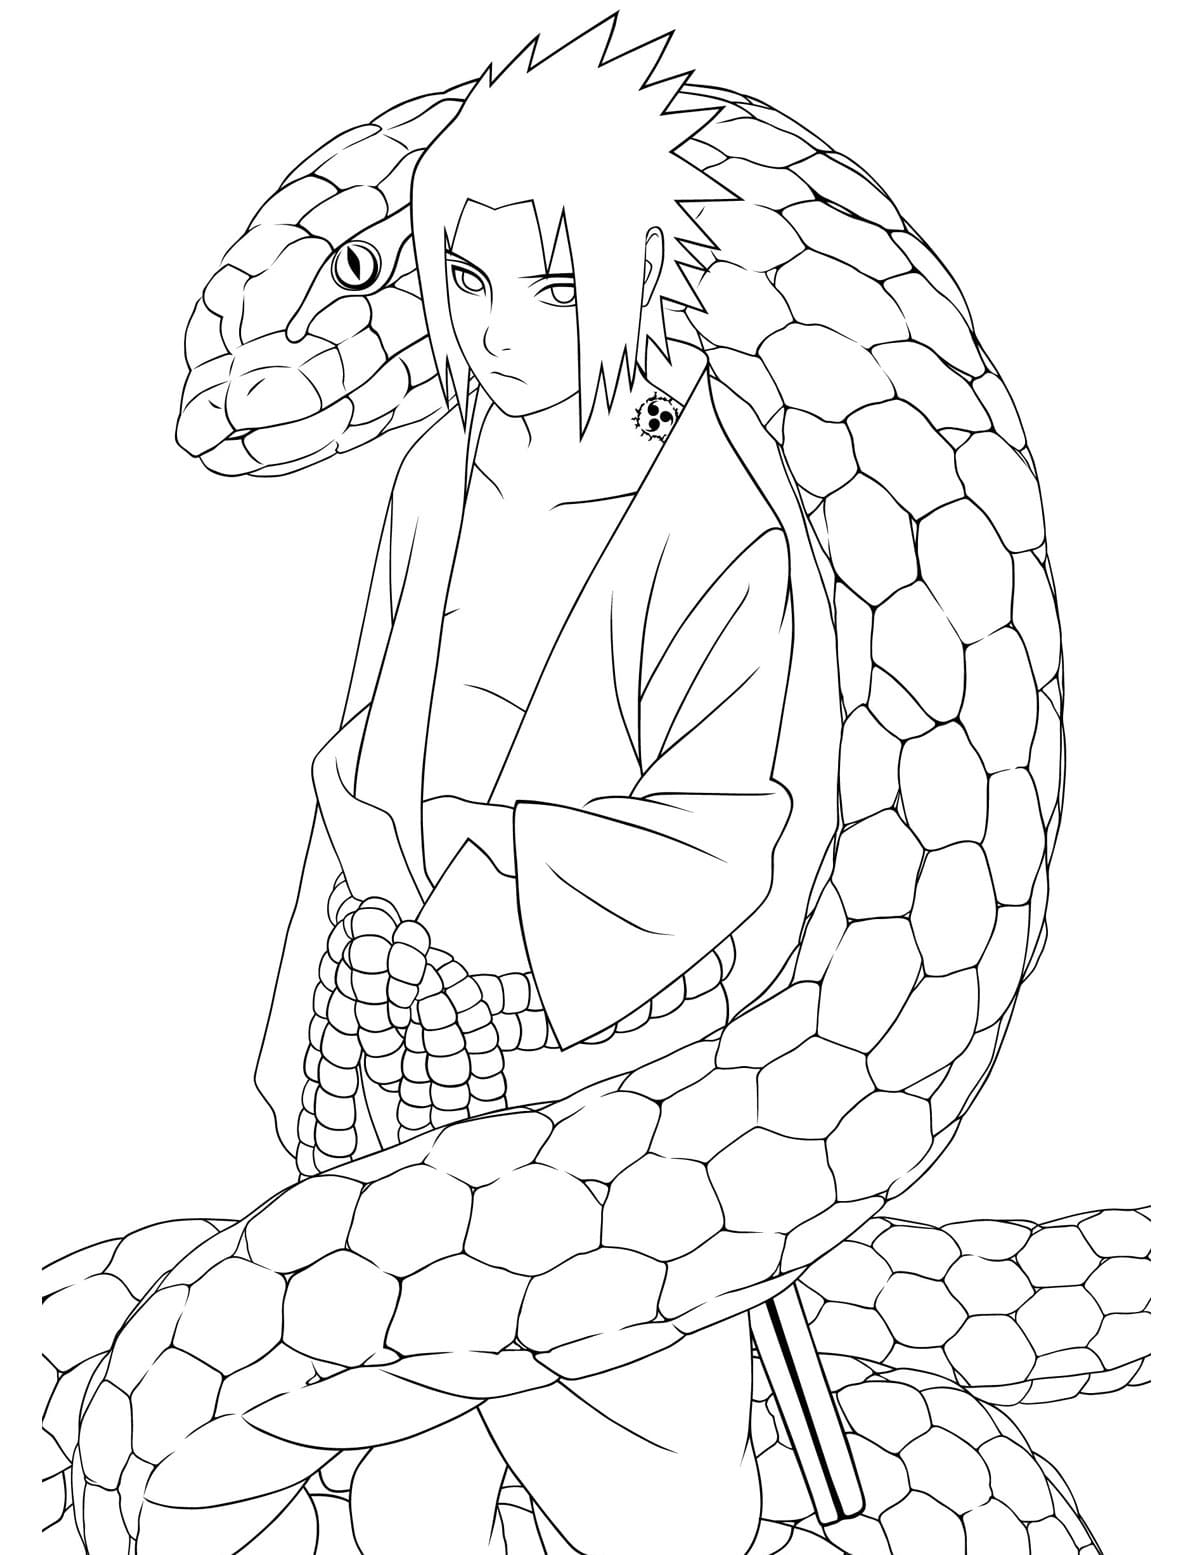 Desenho de Sasuke Uchiha para colorir - Tudodesenhos